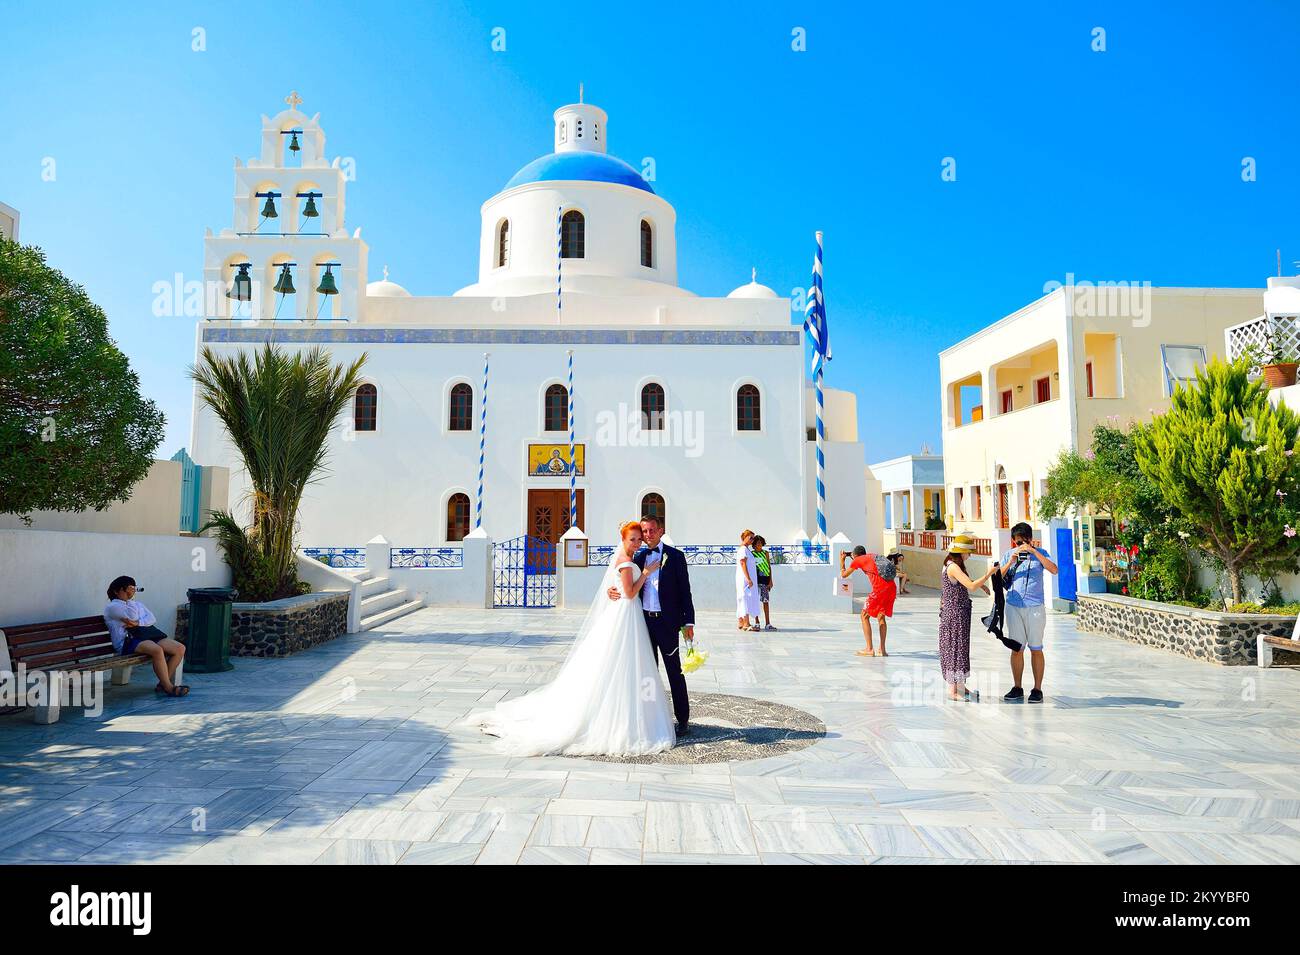 SANTORINI, GRÈCE - 05 AOÛT 2015: Belle jeune couple mariée et marié célébrer le mariage sur Santorini. L'île de Santorini est un endroit populaire pour le mariage Banque D'Images